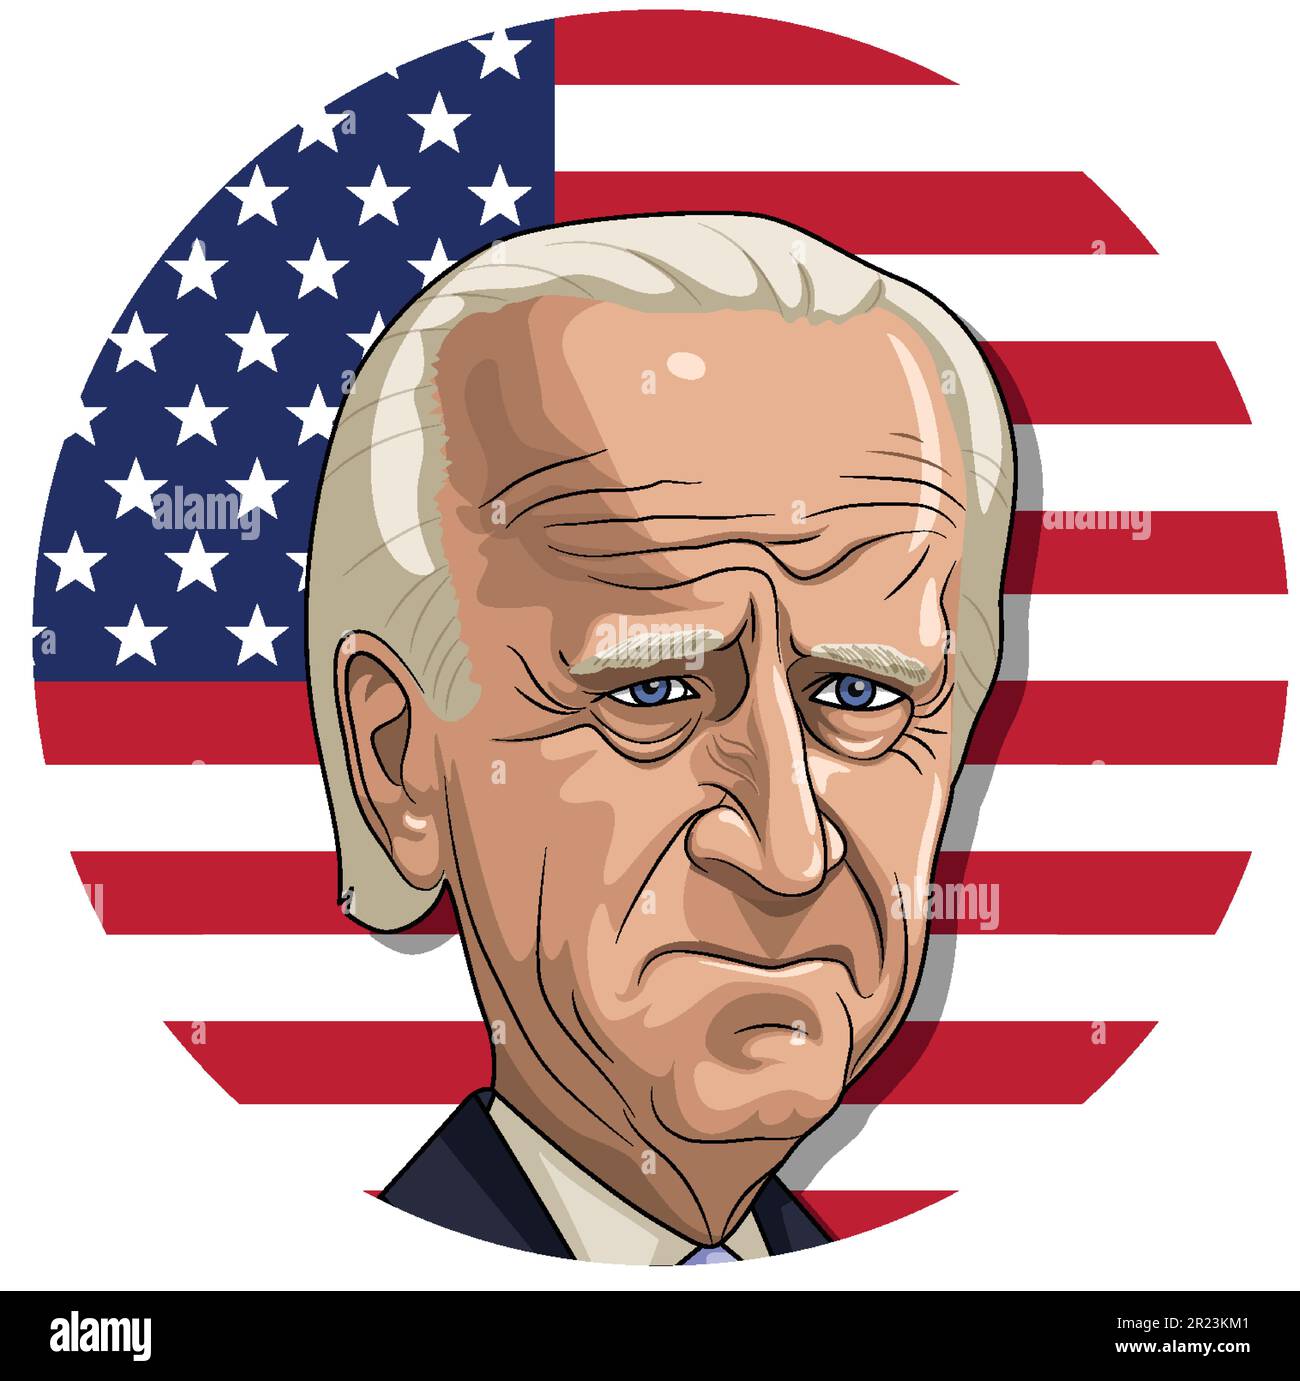 Joe Biden, amerikanischer Politiker, mit einer Zeichentrickfigur mit amerikanischer Flagge Stock Vektor